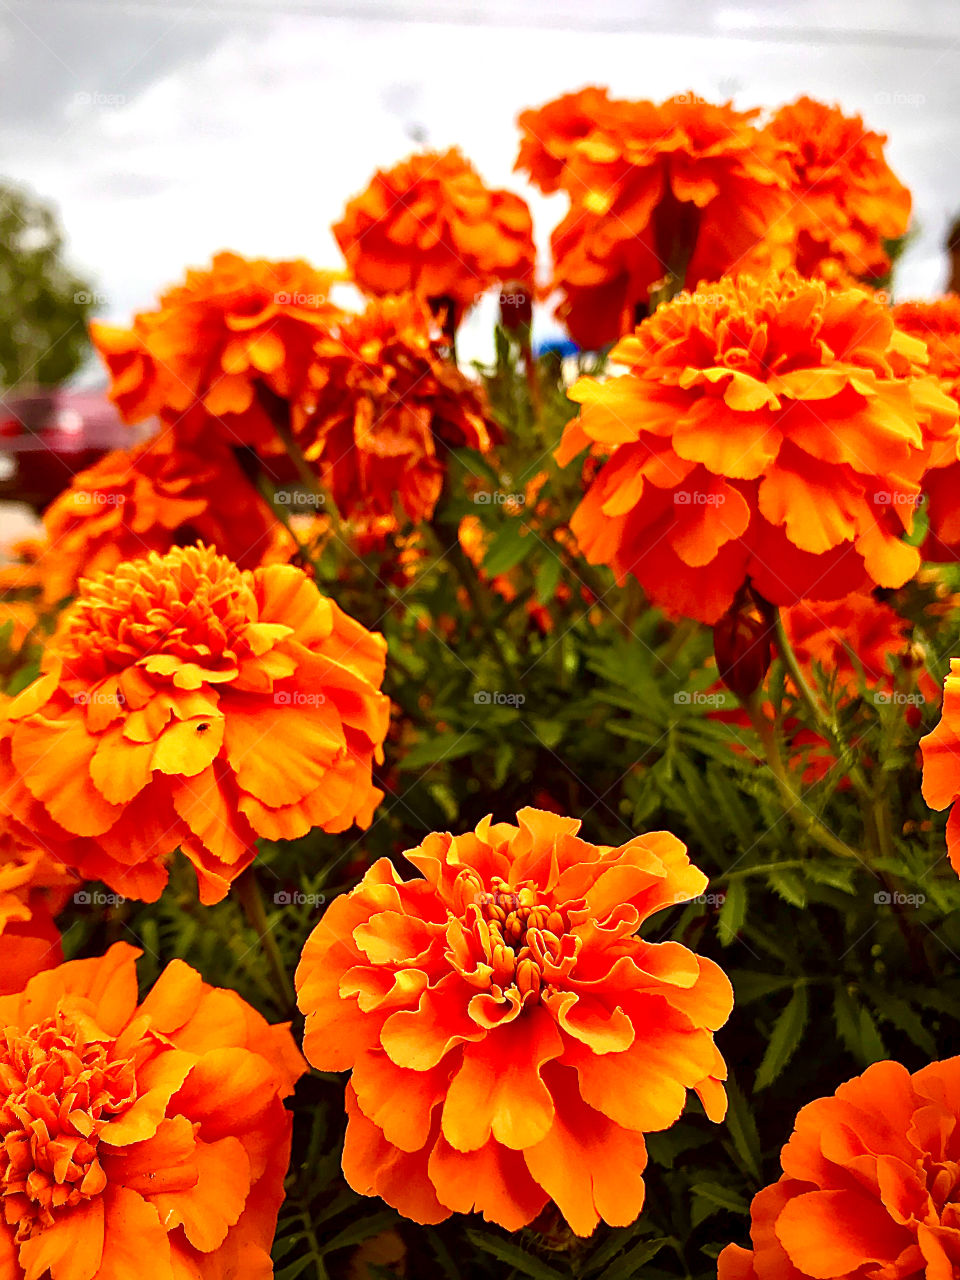 Bright summer orange floral mood